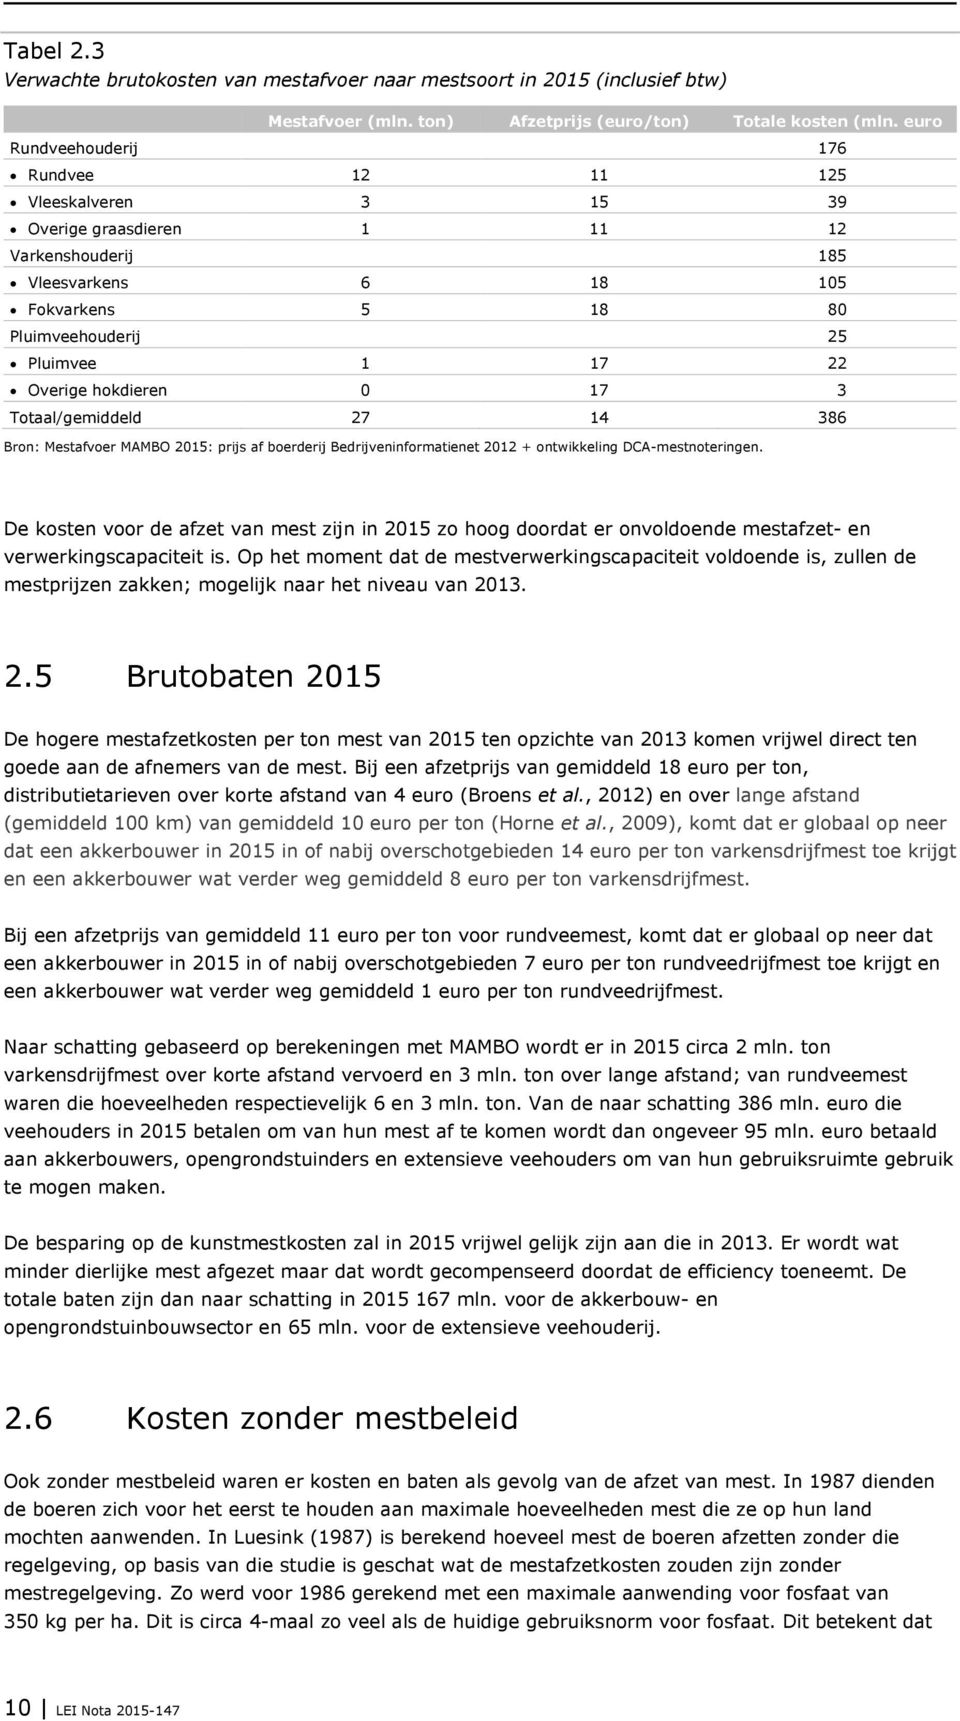 hokdieren 0 17 3 Totaal/gemiddeld 27 14 386 Bron: Mestafvoer MAMBO 2015: prijs af boerderij Bedrijveninformatienet 2012 + ontwikkeling DCA-mestnoteringen.